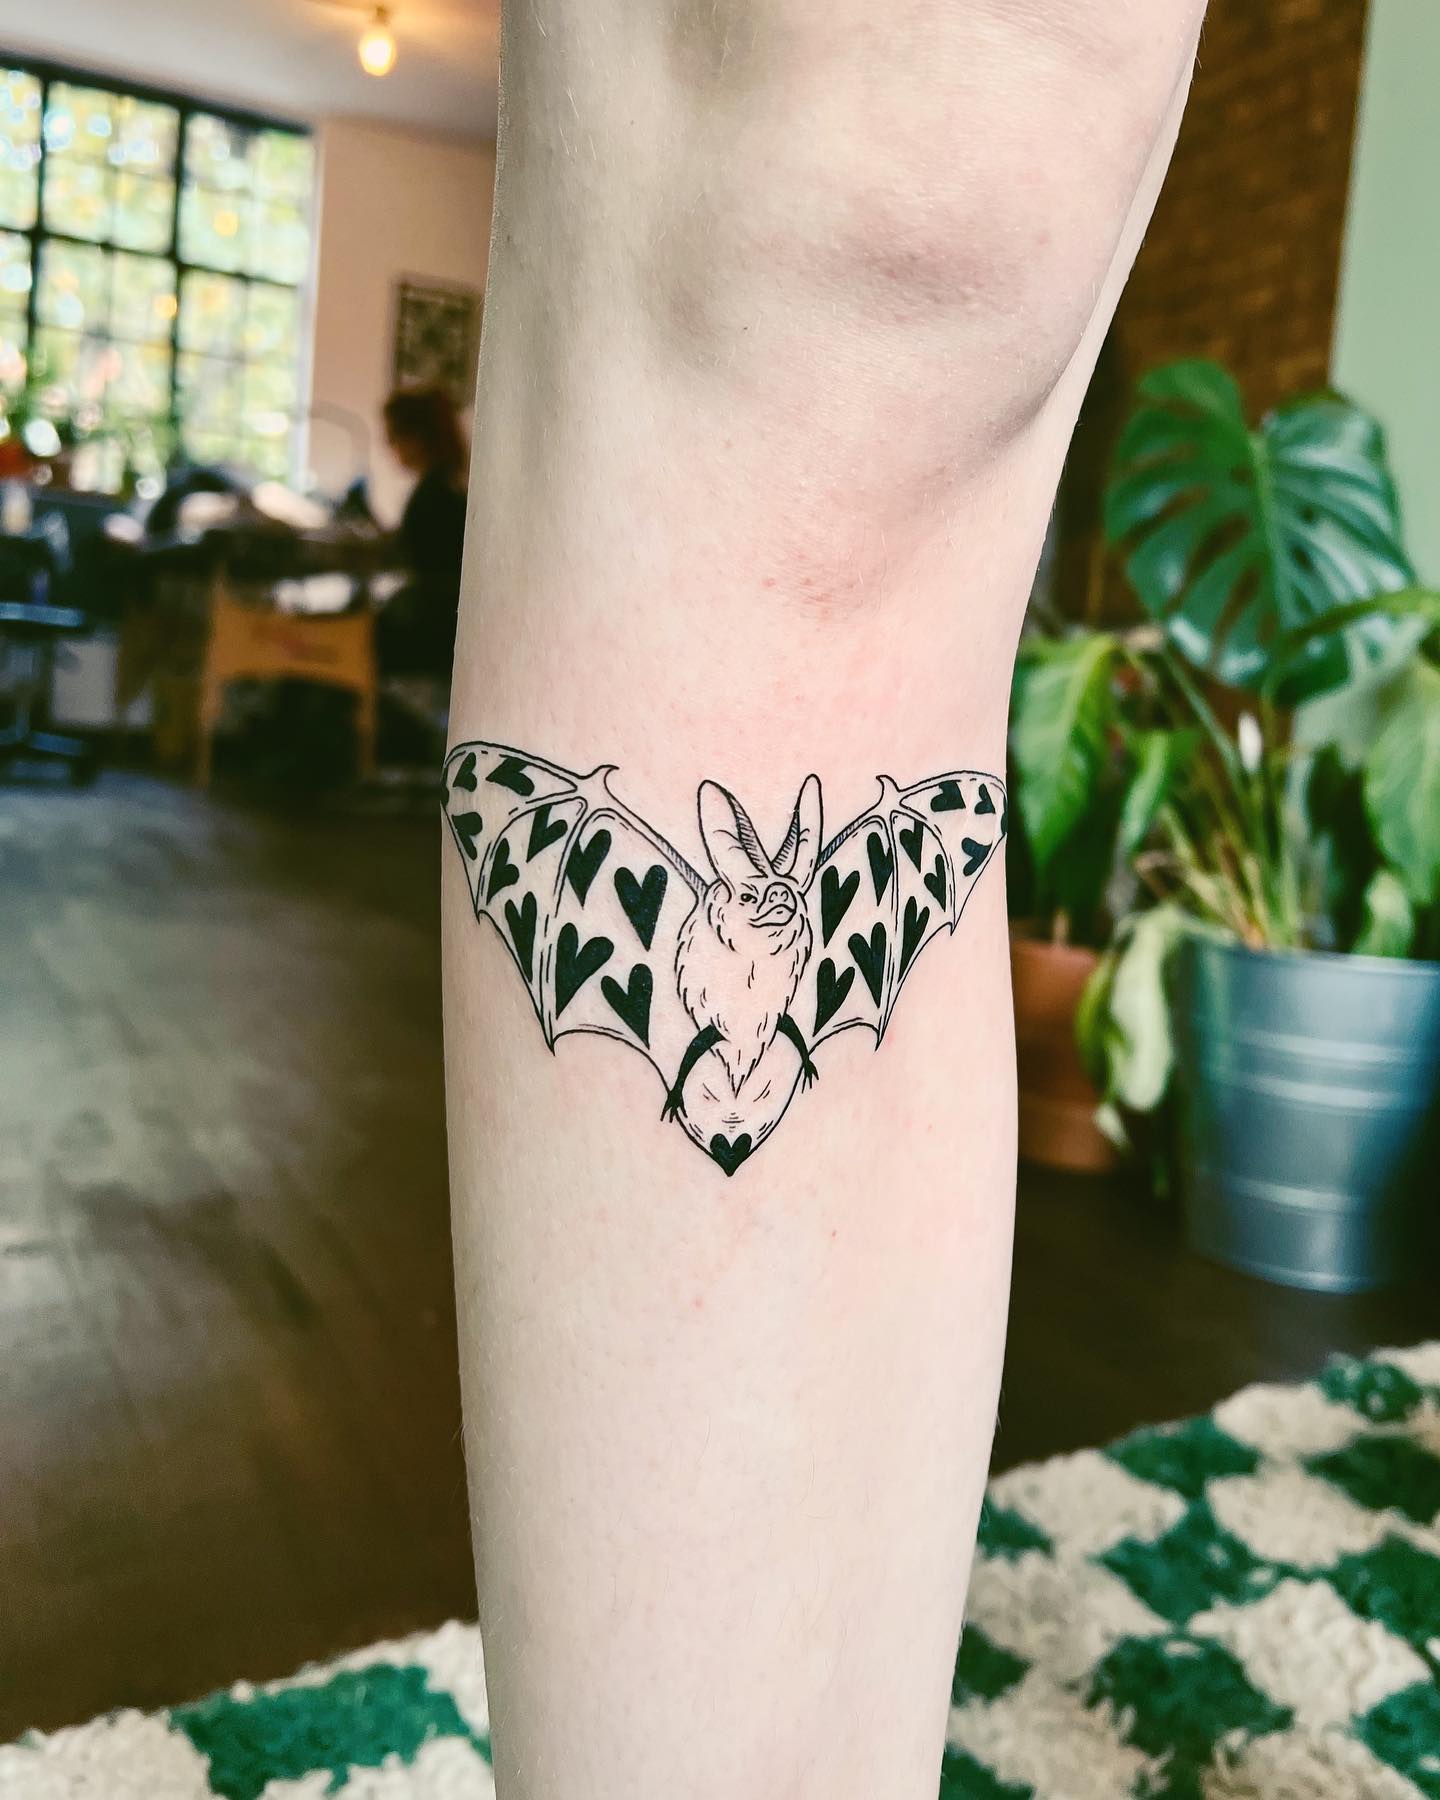 Tatuaje de murciélago con símbolos de corazón.